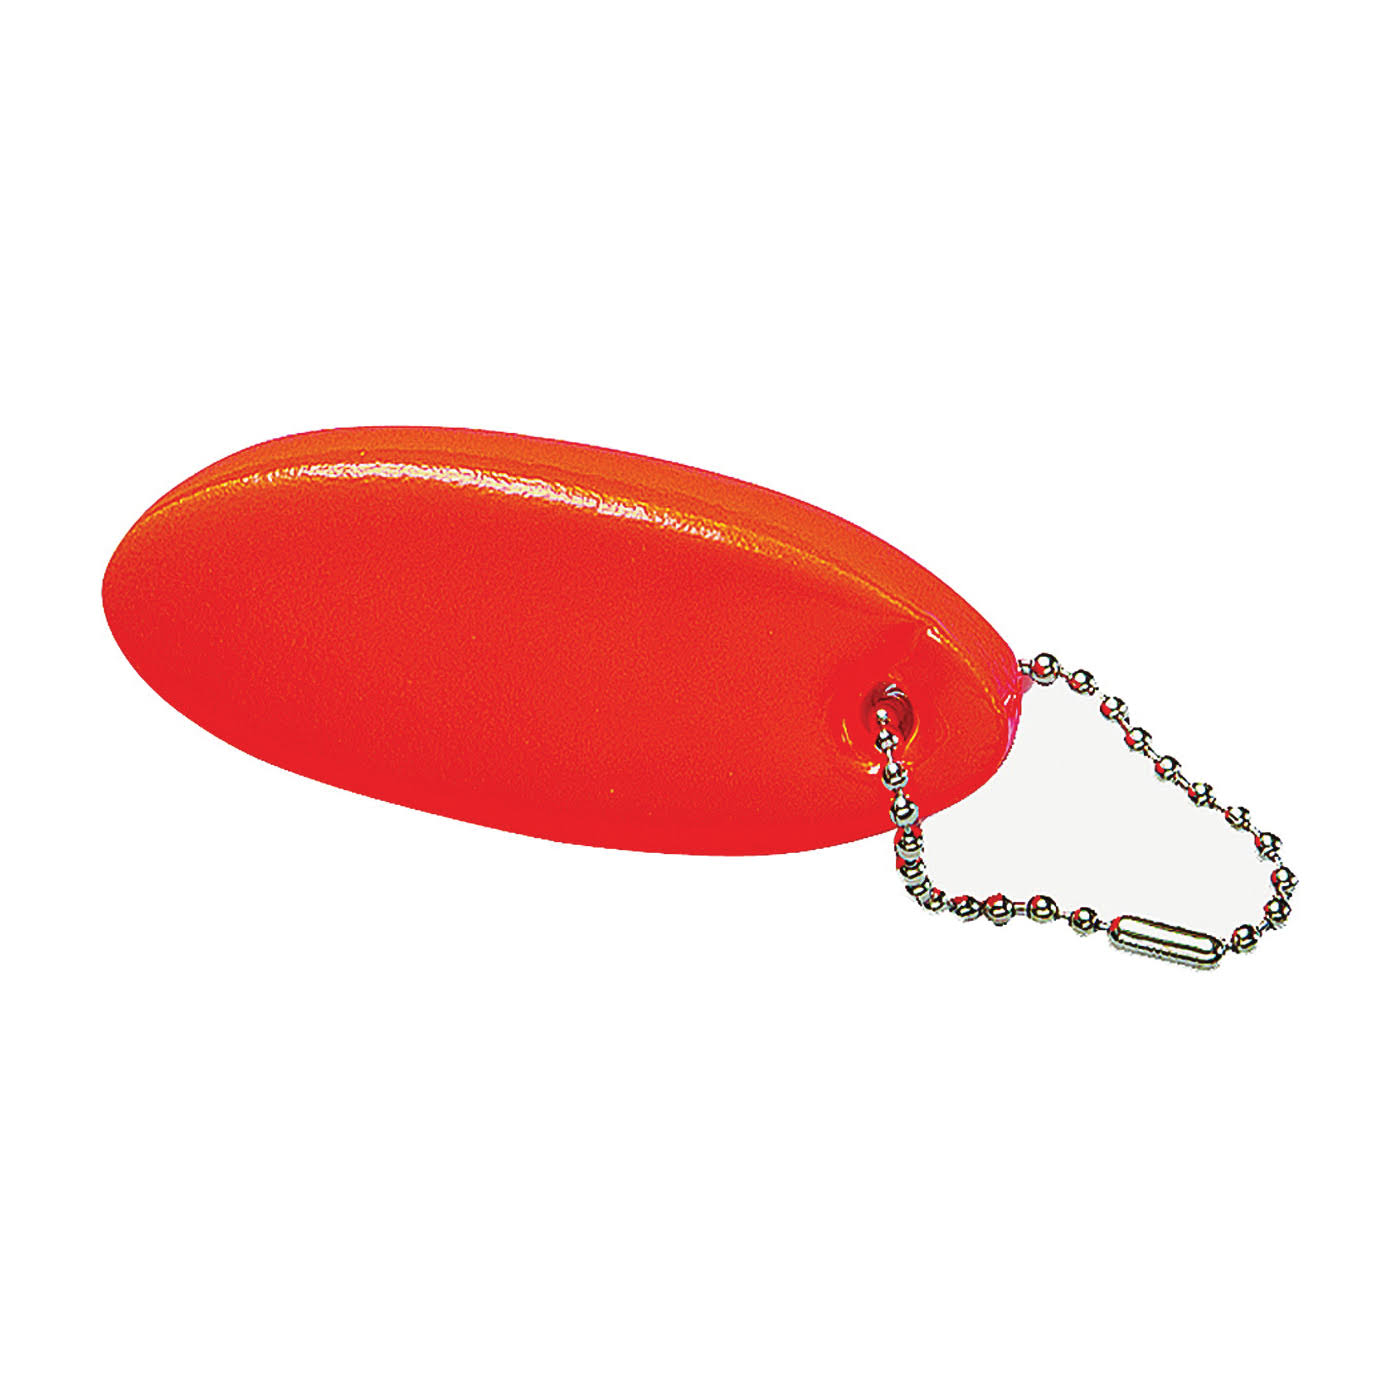 Hy-Ko Products Floatable Key Ring - Orange